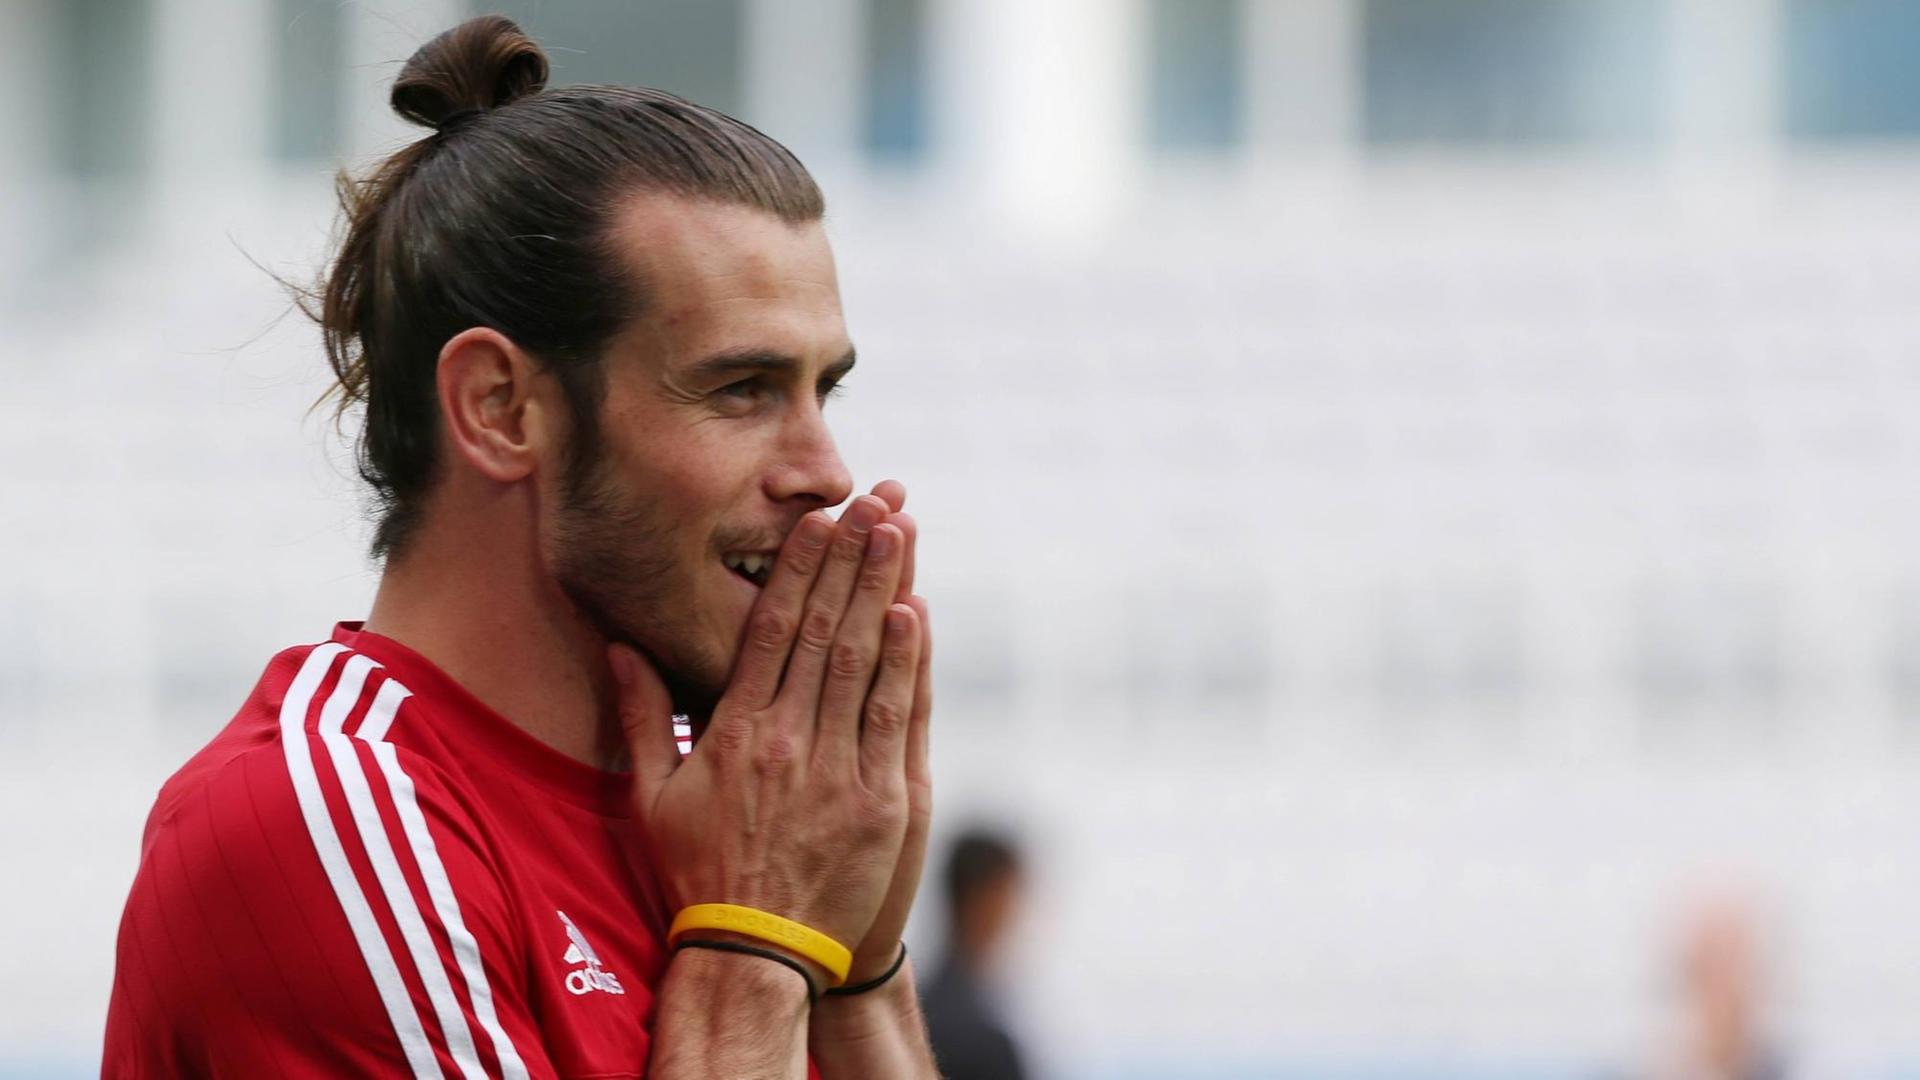 Der walisische Fußballspieler Gareth Bale beim Training in Lens.